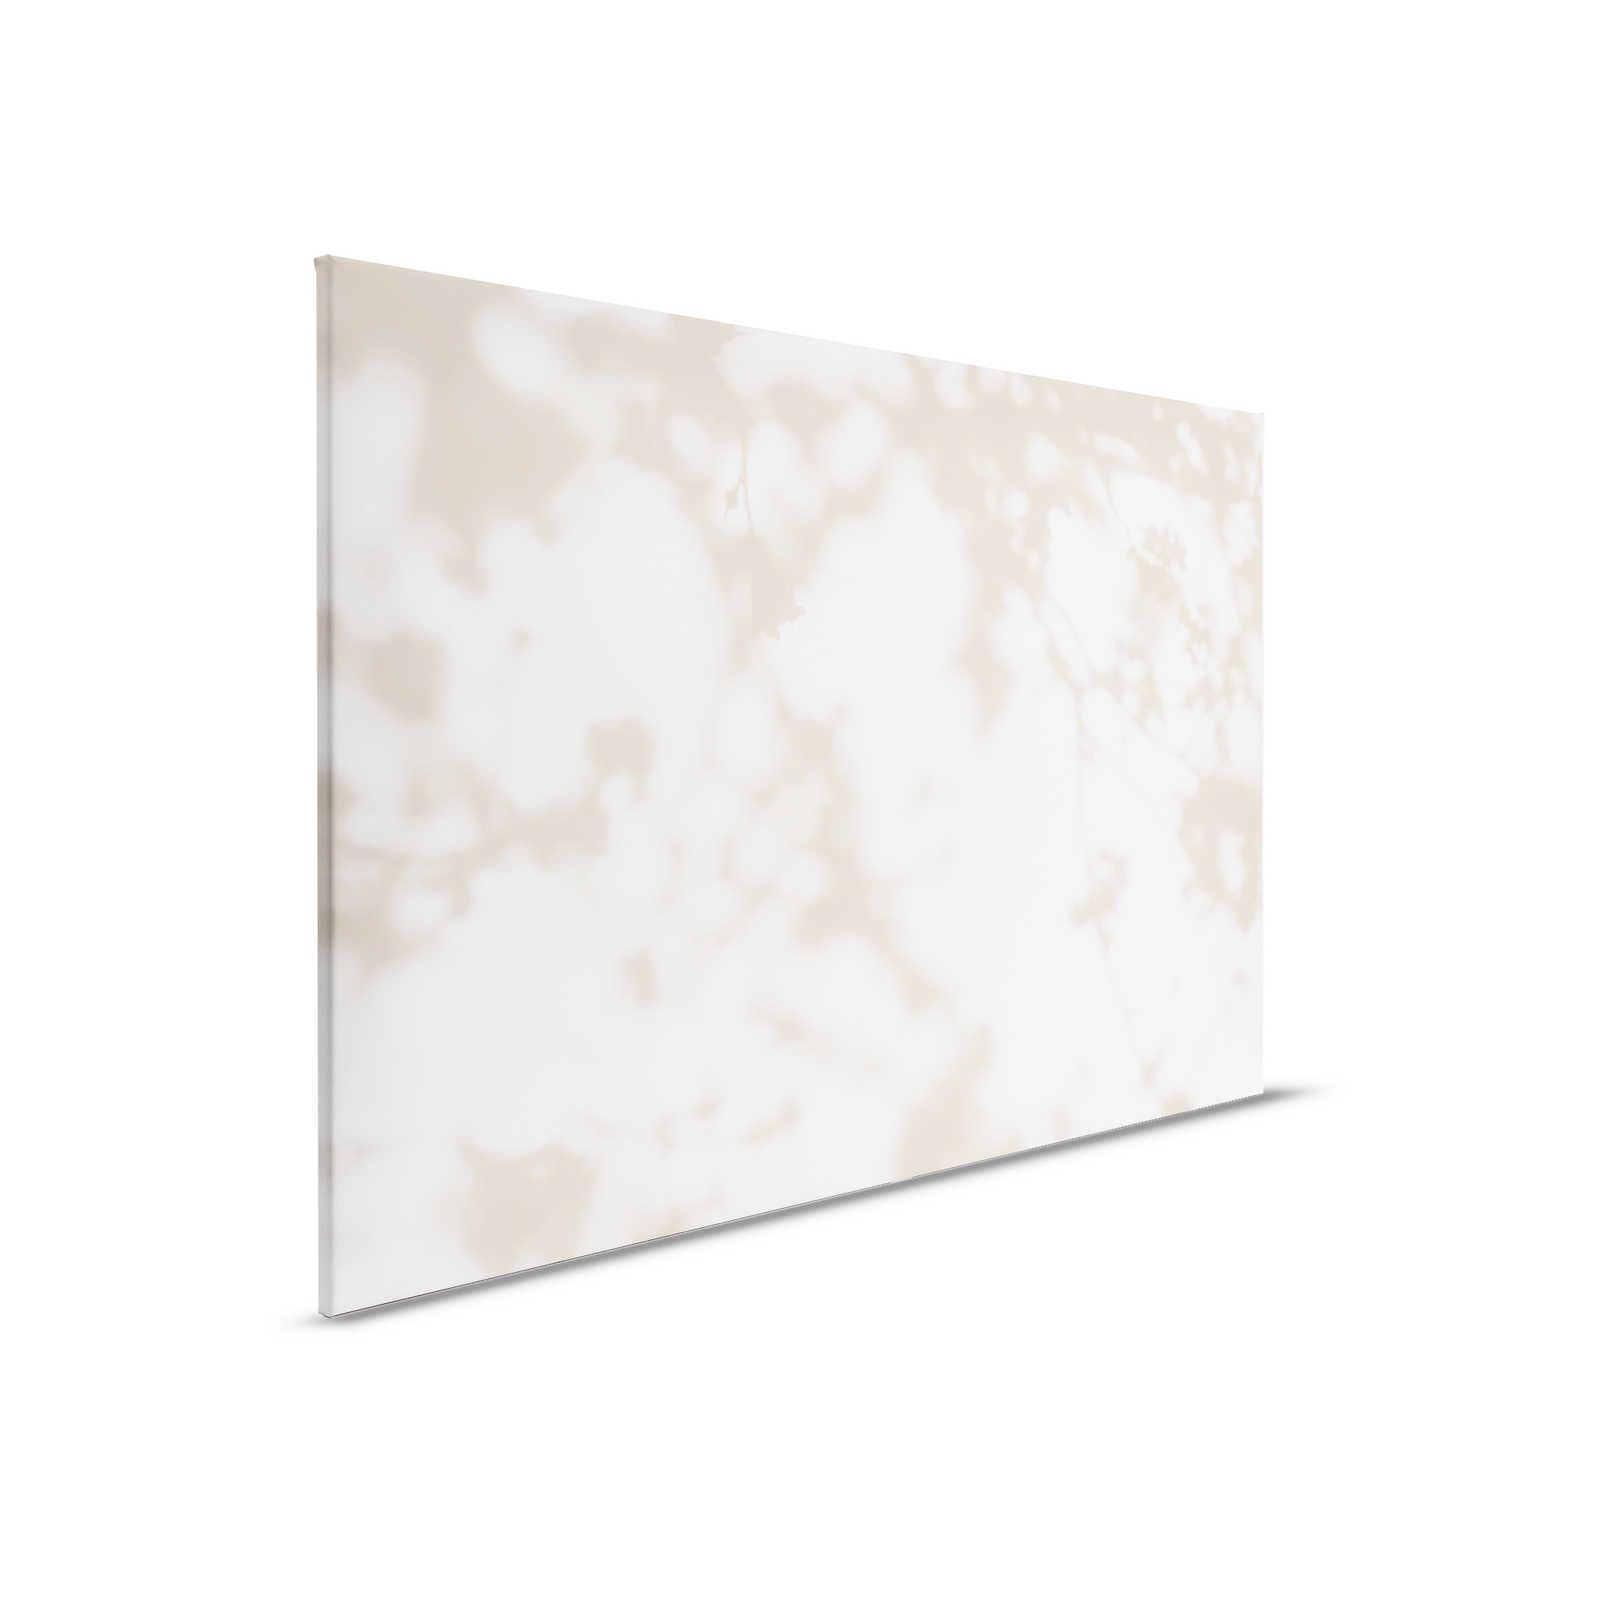 Camera chiara 3 - Quadro su tela Ombre della natura in beige e bianco - 0,90 m x 0,60 m
